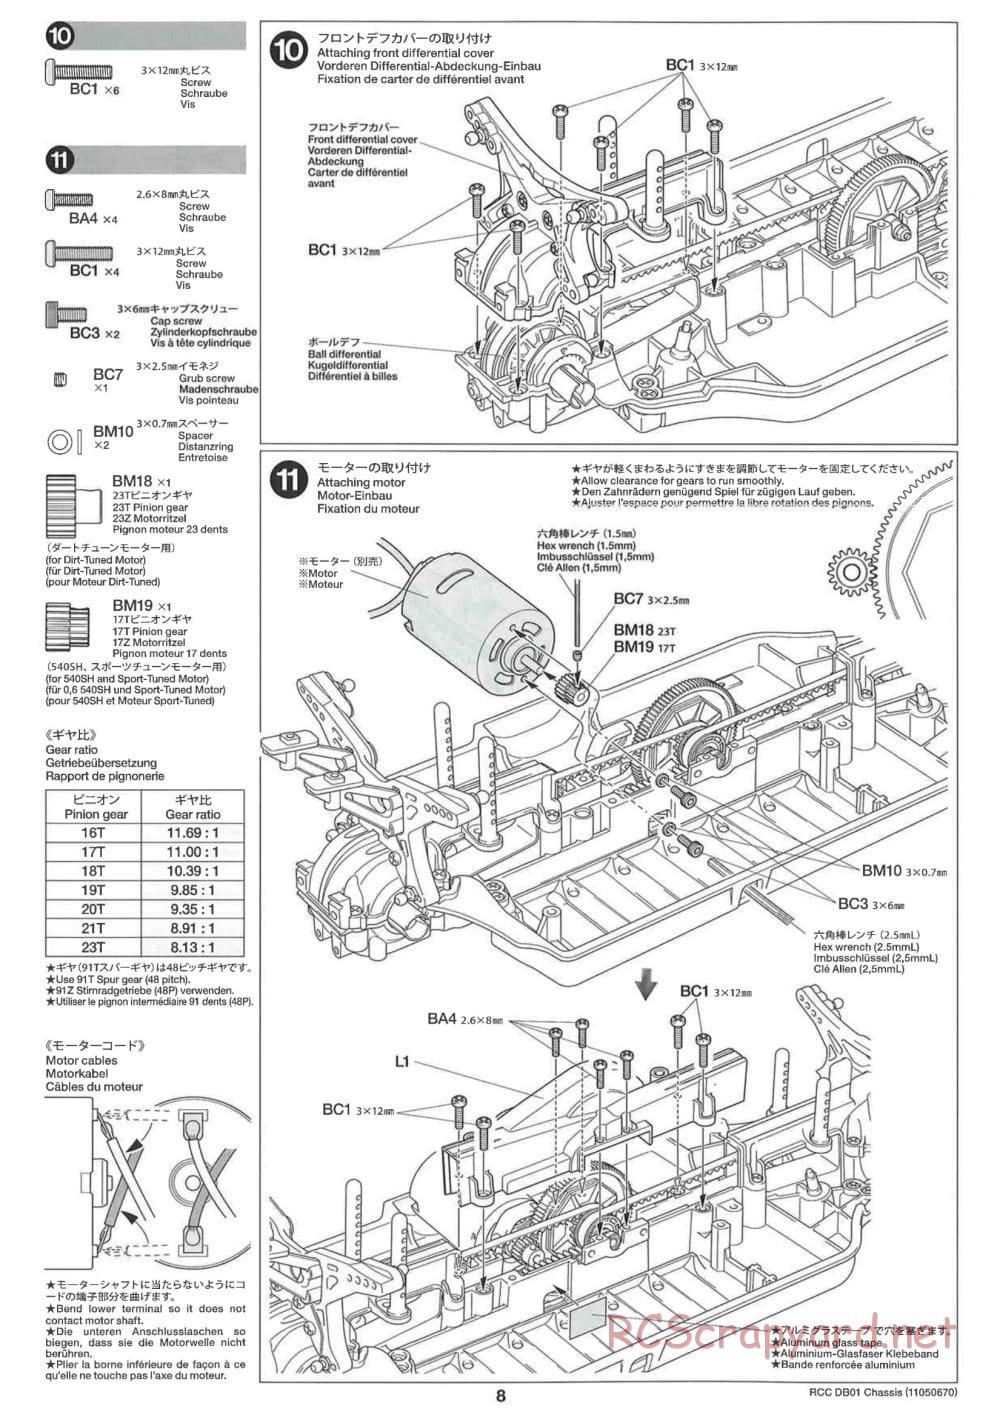 Tamiya - DB-01 Chassis - Manual - Page 8